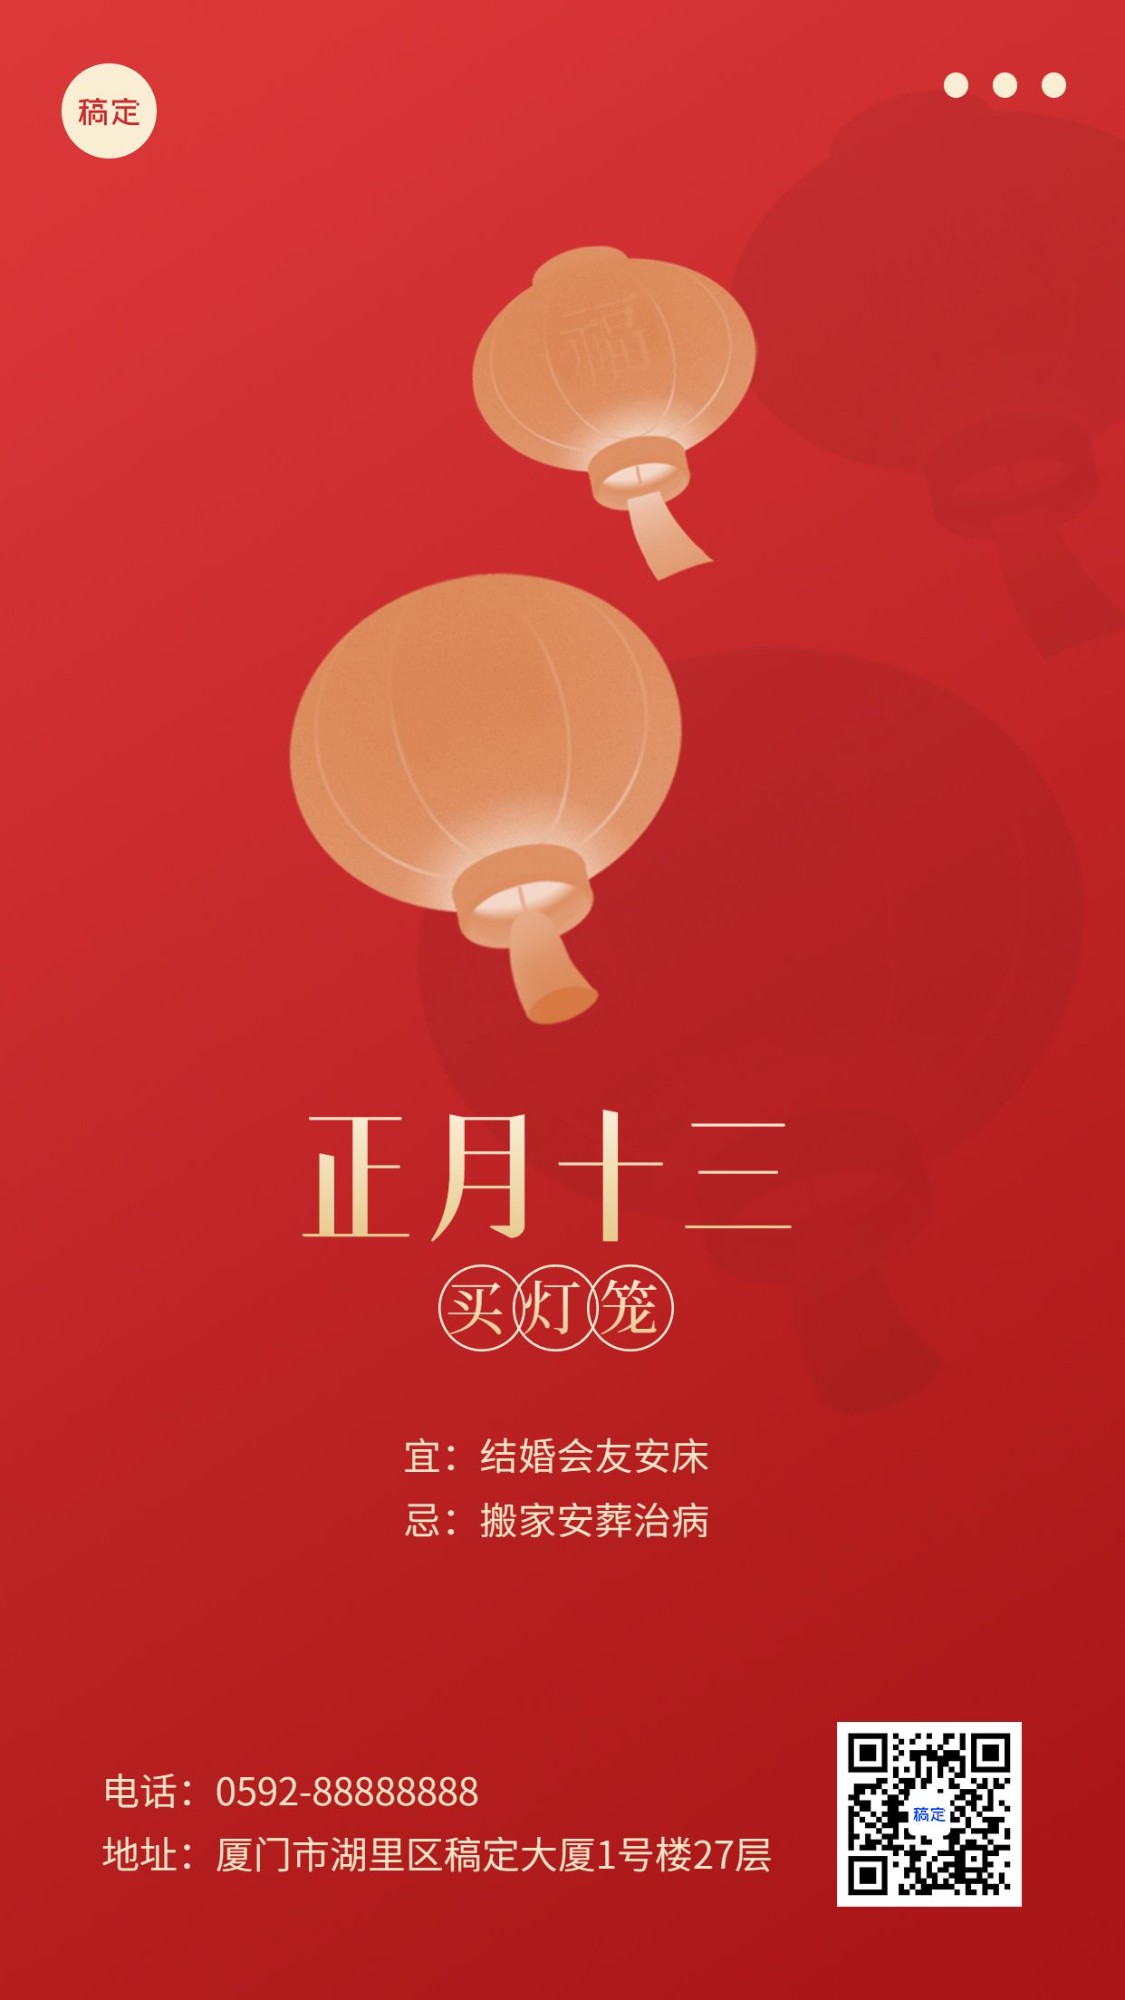 春节新年祝福正月十三简约排版套系手机海报